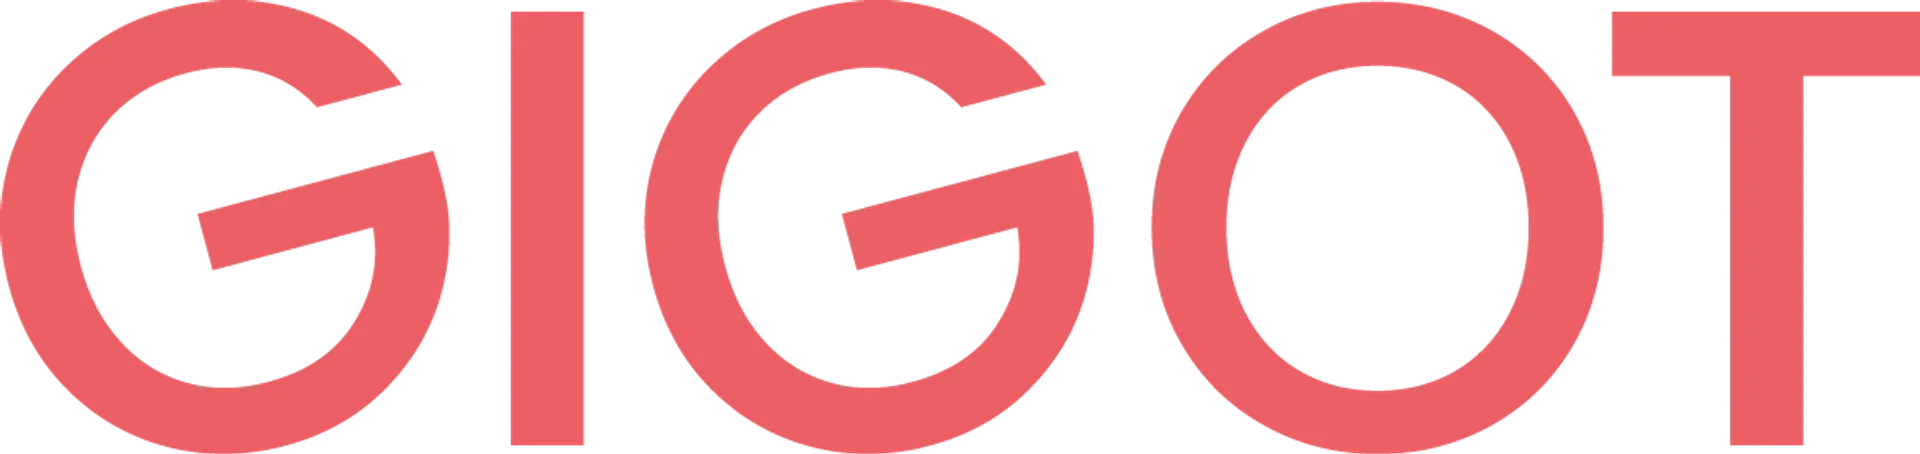 GIGOT logo